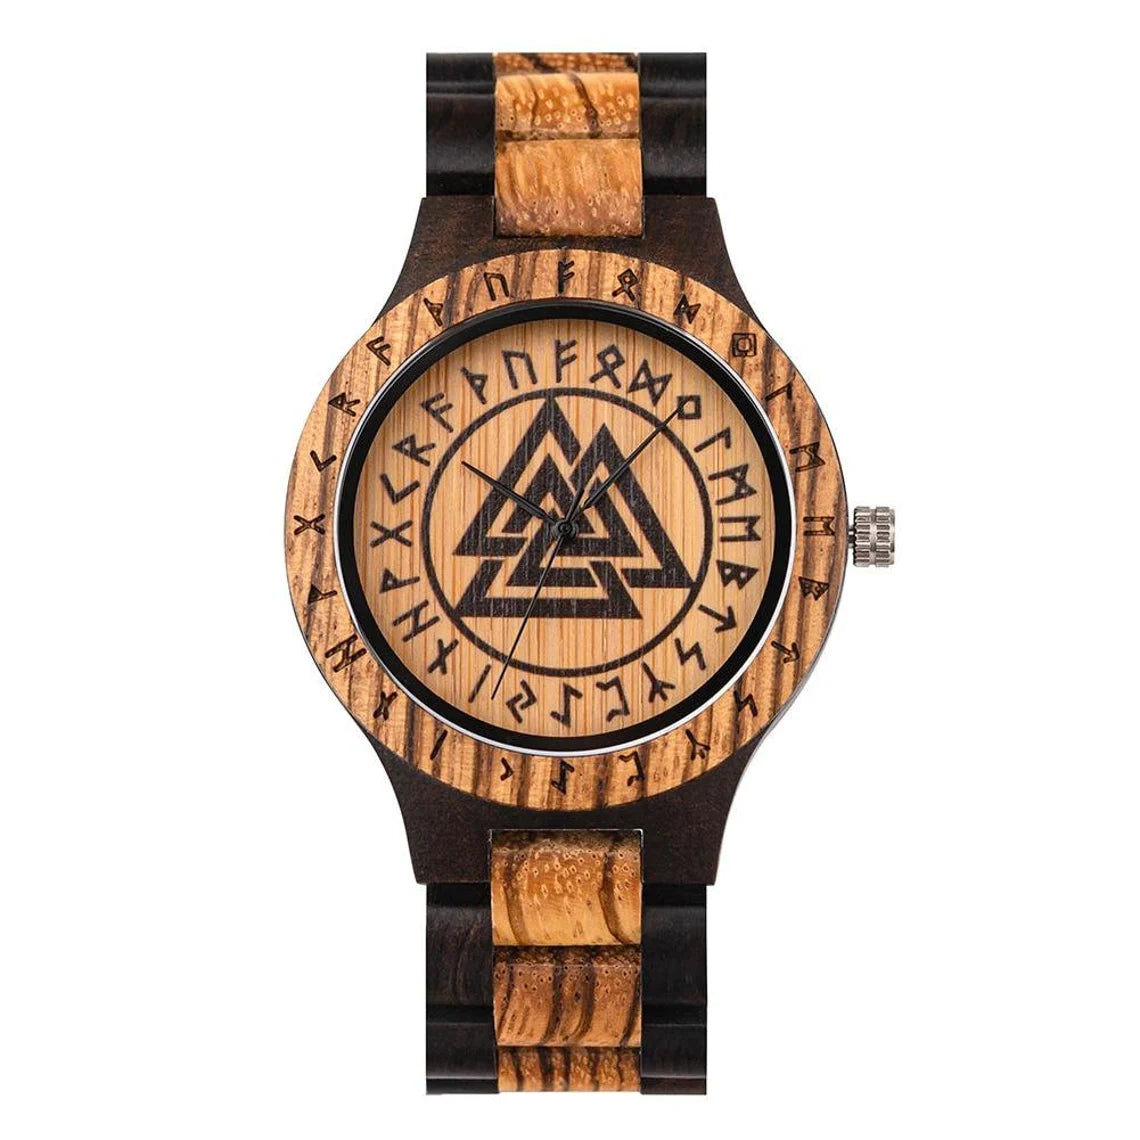 Valknut Wooden Watch